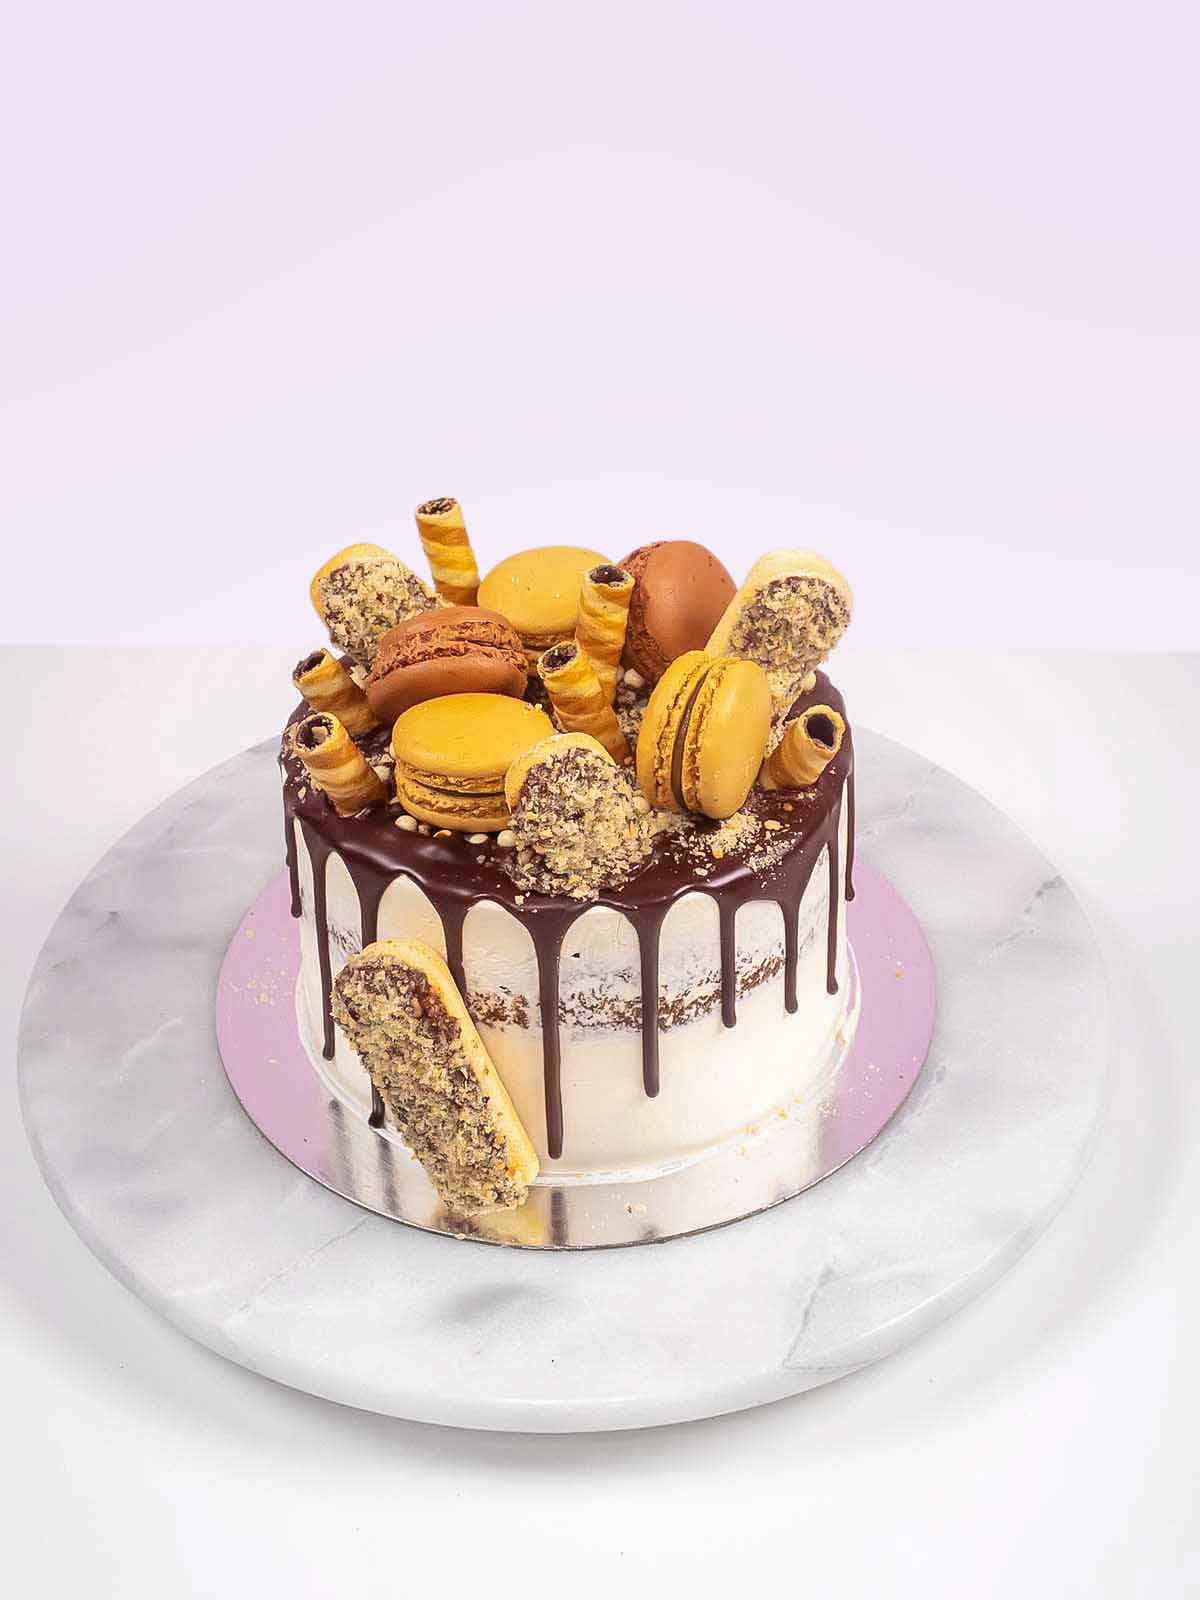 Tiramisu Layer Cake - The Floral Apron